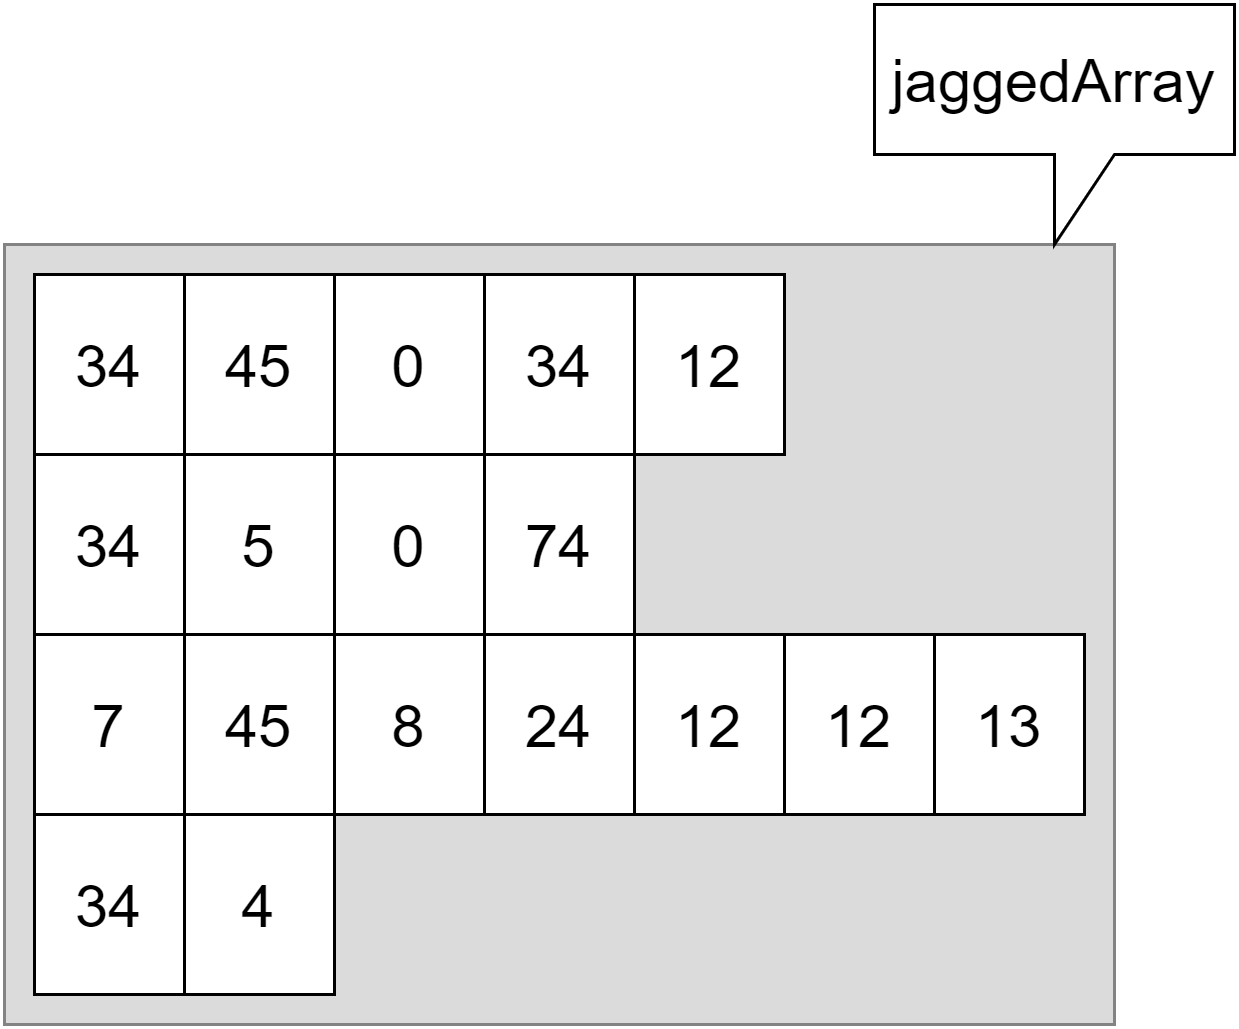 Voorbeeld van een jagged array.